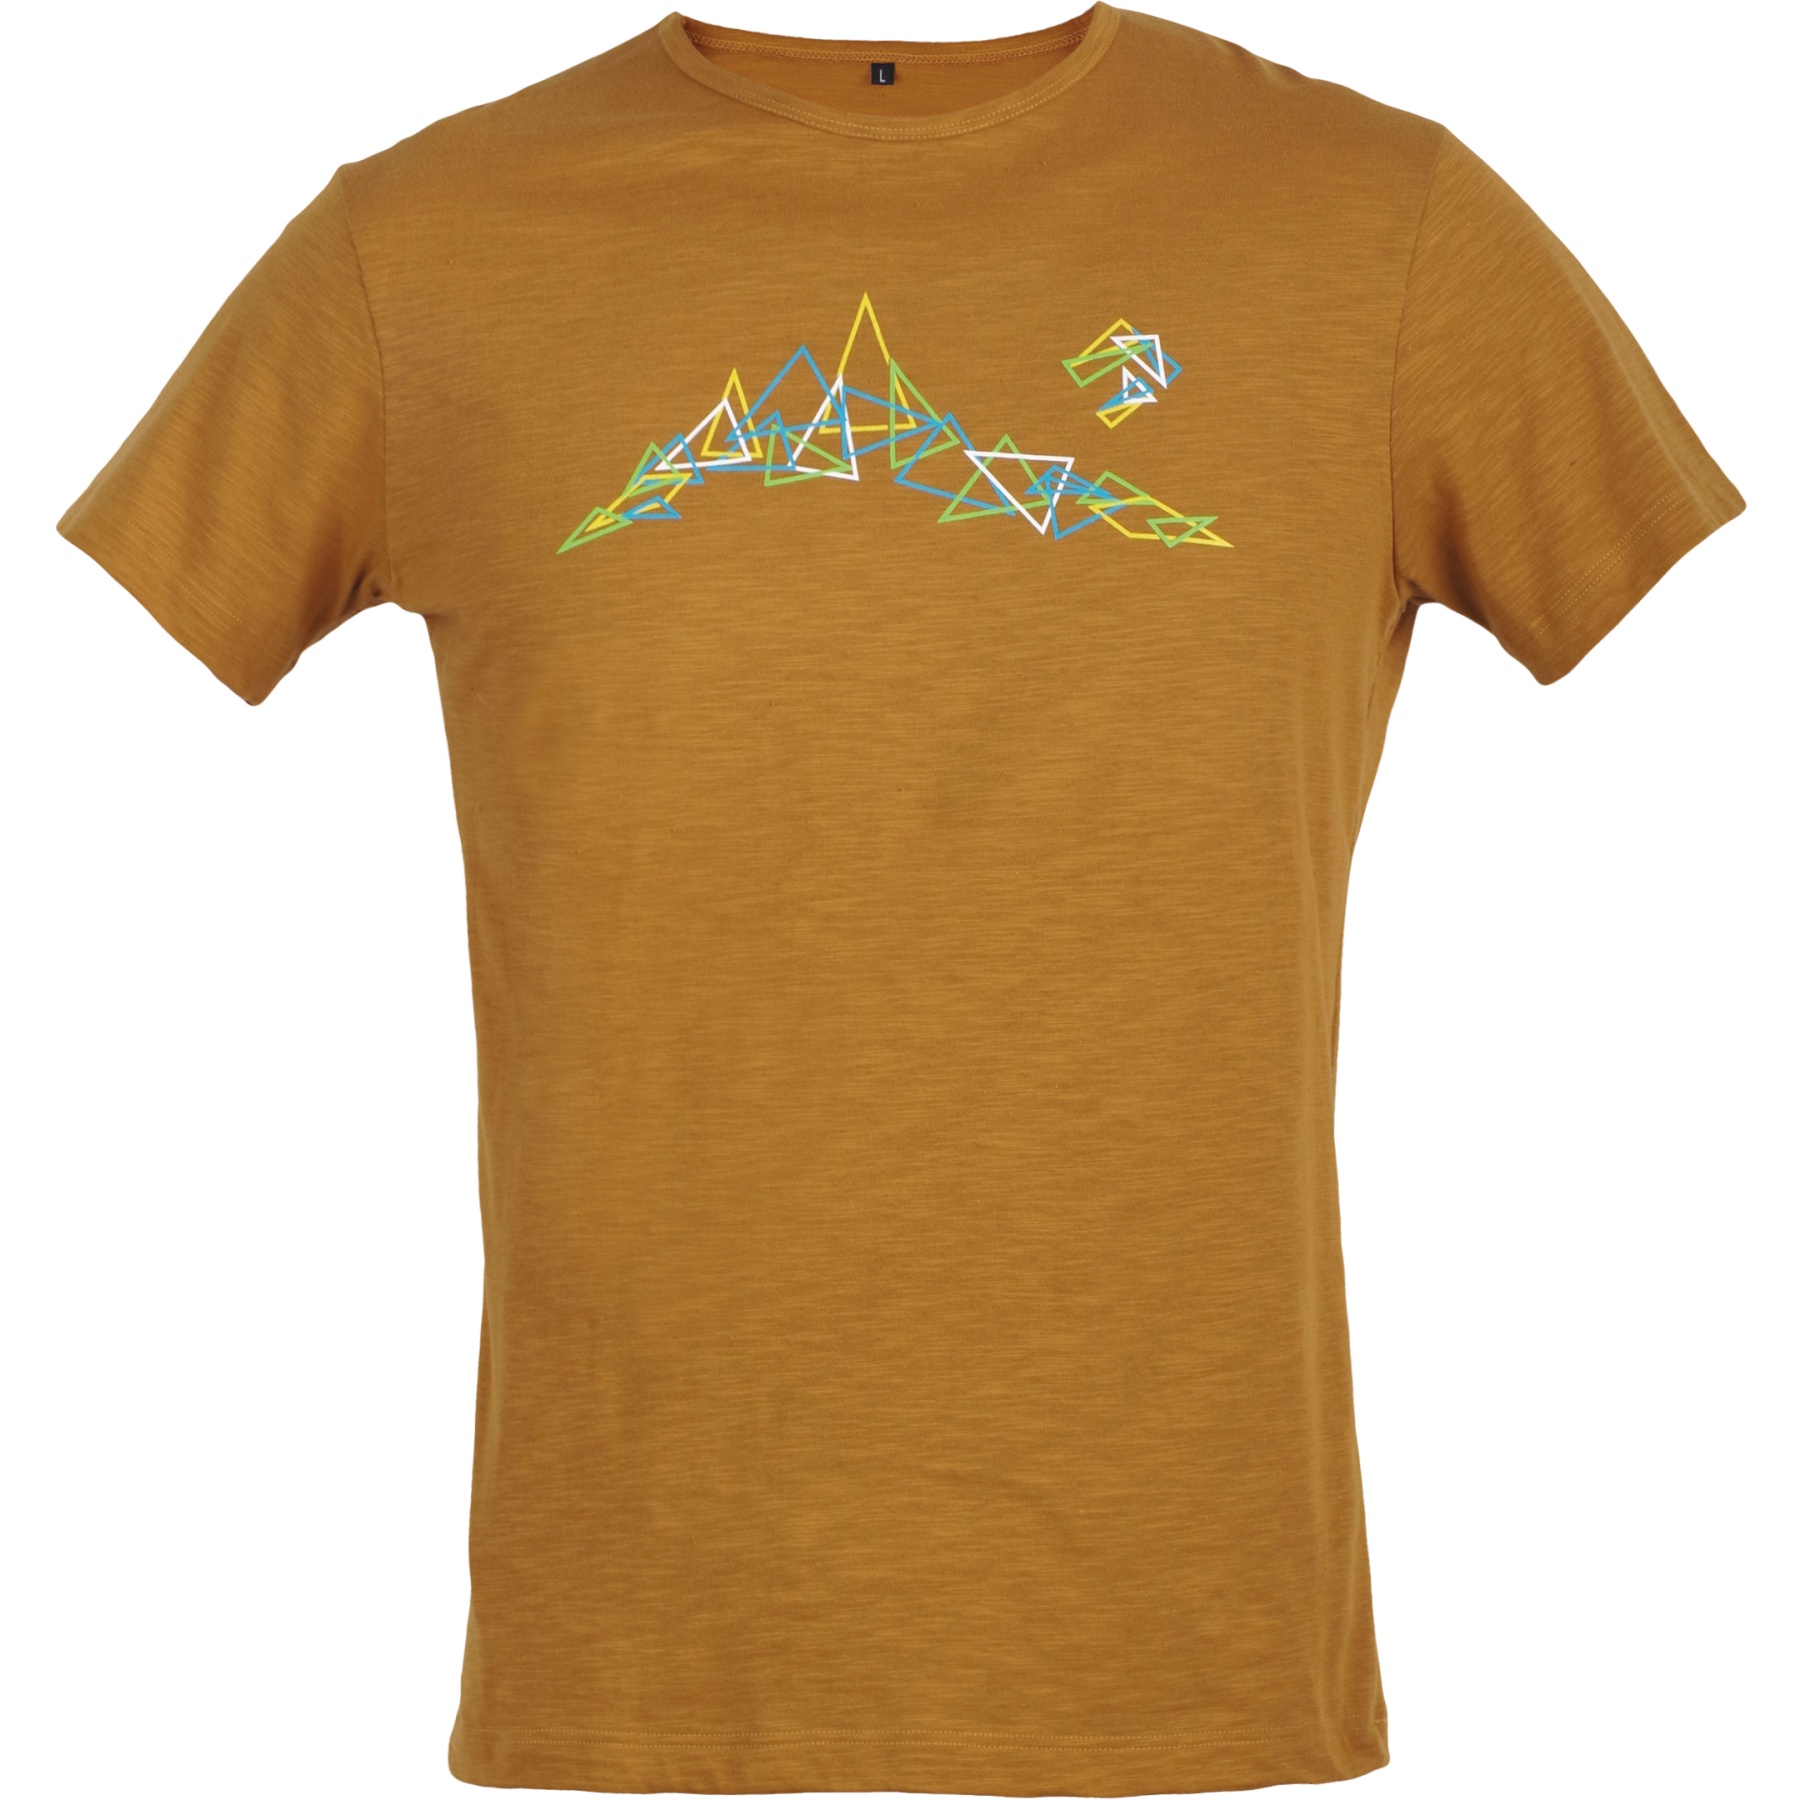 Produktbild von Directalpine Bosco Triangles T-Shirt - caramel (triangles)